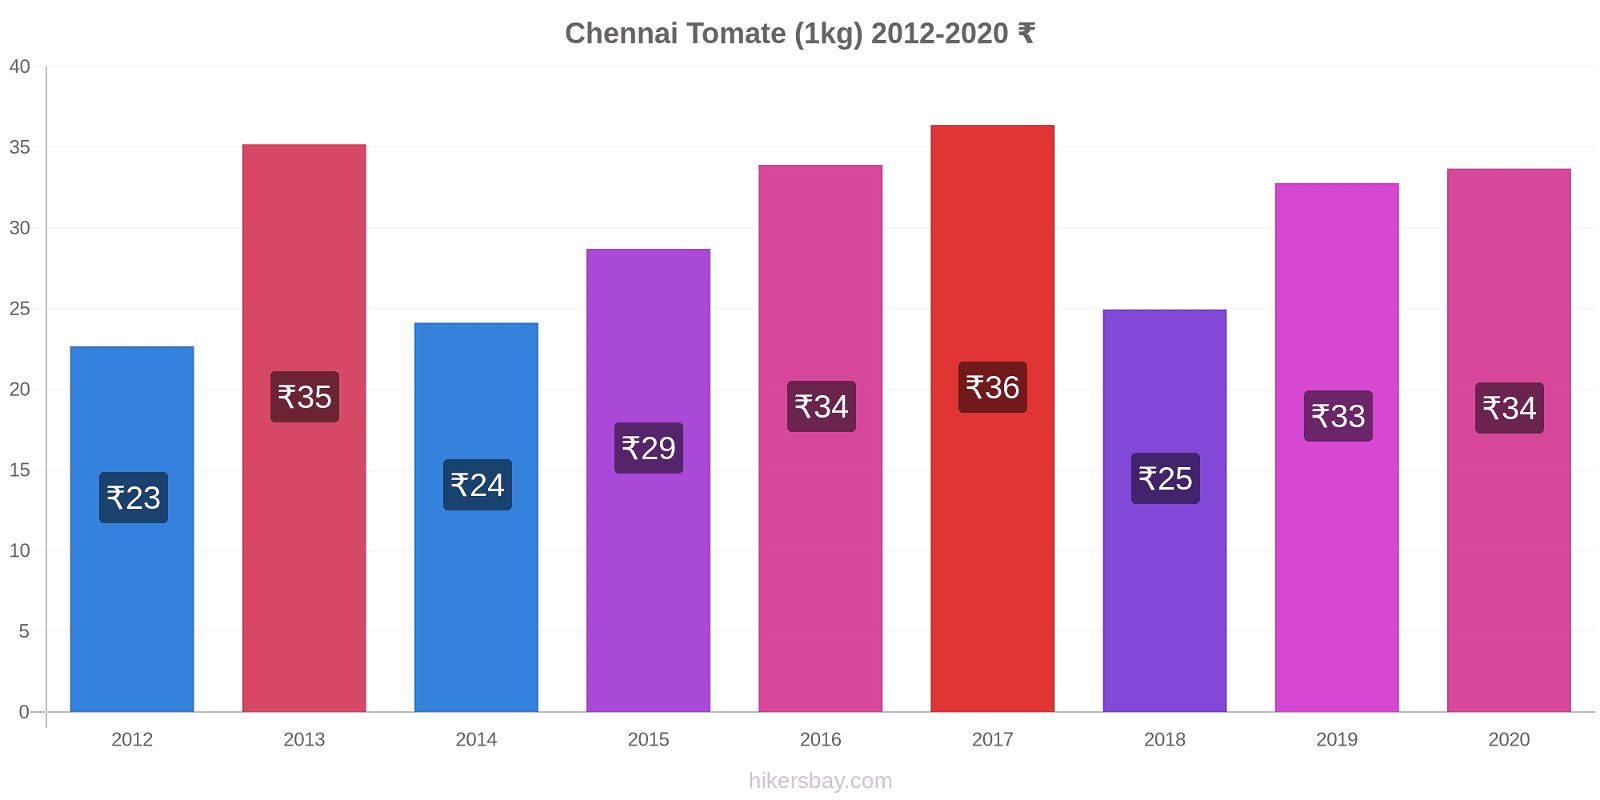 Chennai variação de preço Tomate (1kg) hikersbay.com